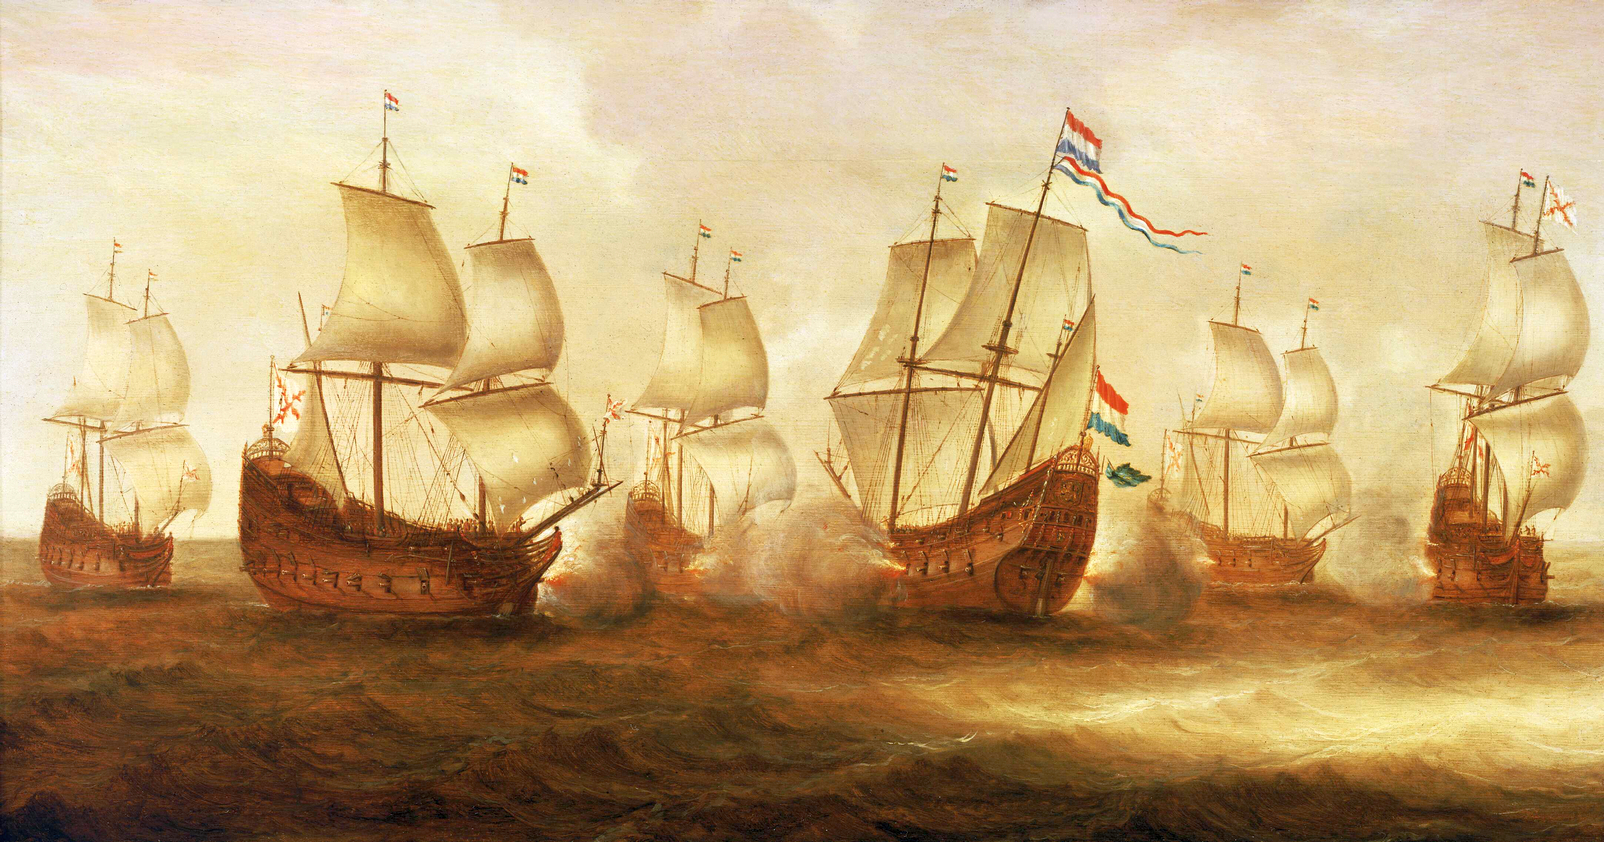 Ütközet Nieuwpoort előtt, Witte de With hajóraja és a dunkirkerek közt, 1640 júliusában.